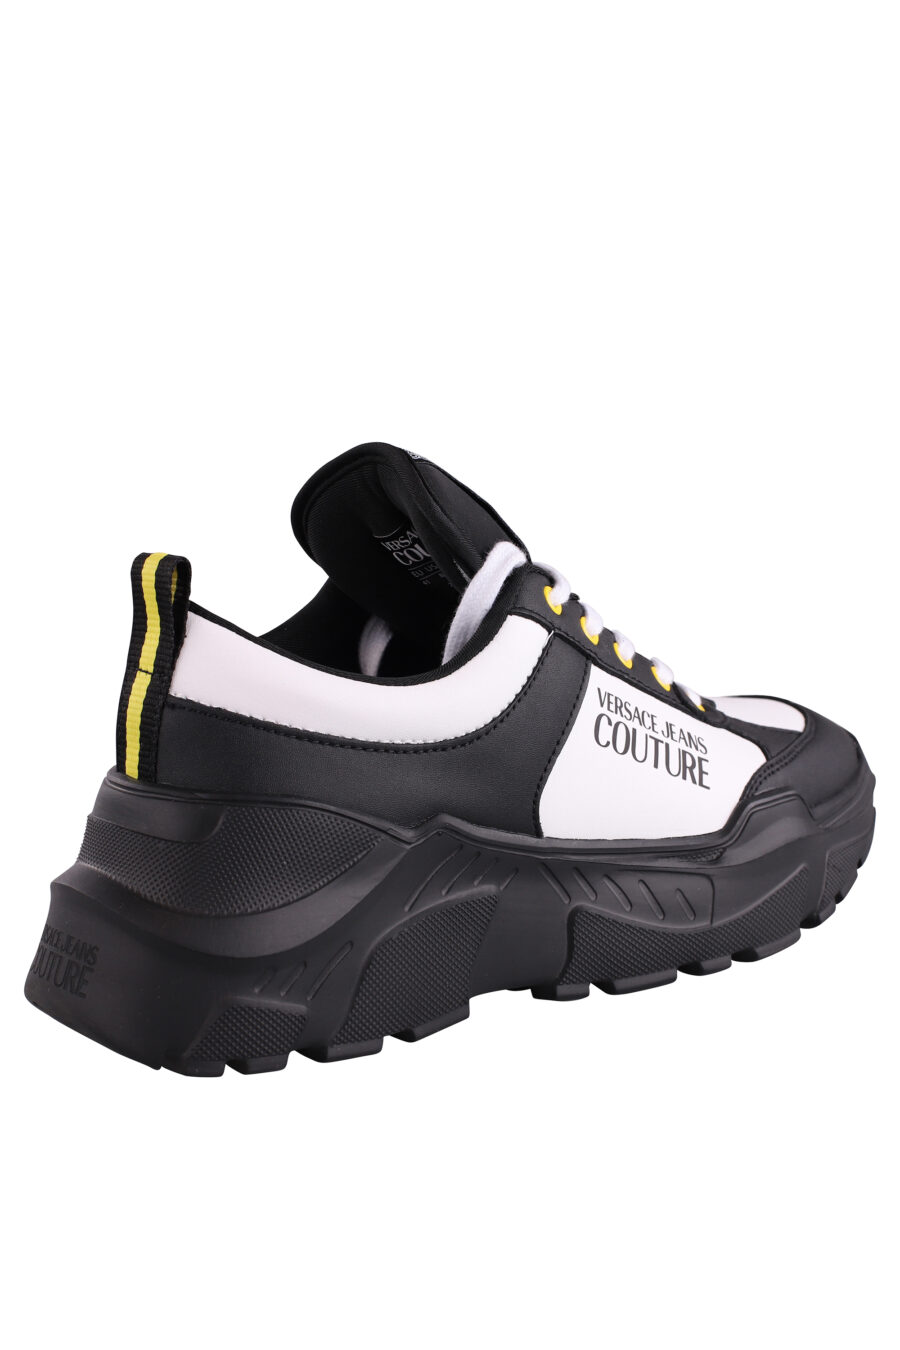 Zapatillas bicolor negras y blancas con logo y detalle amarillo - IMG 9069